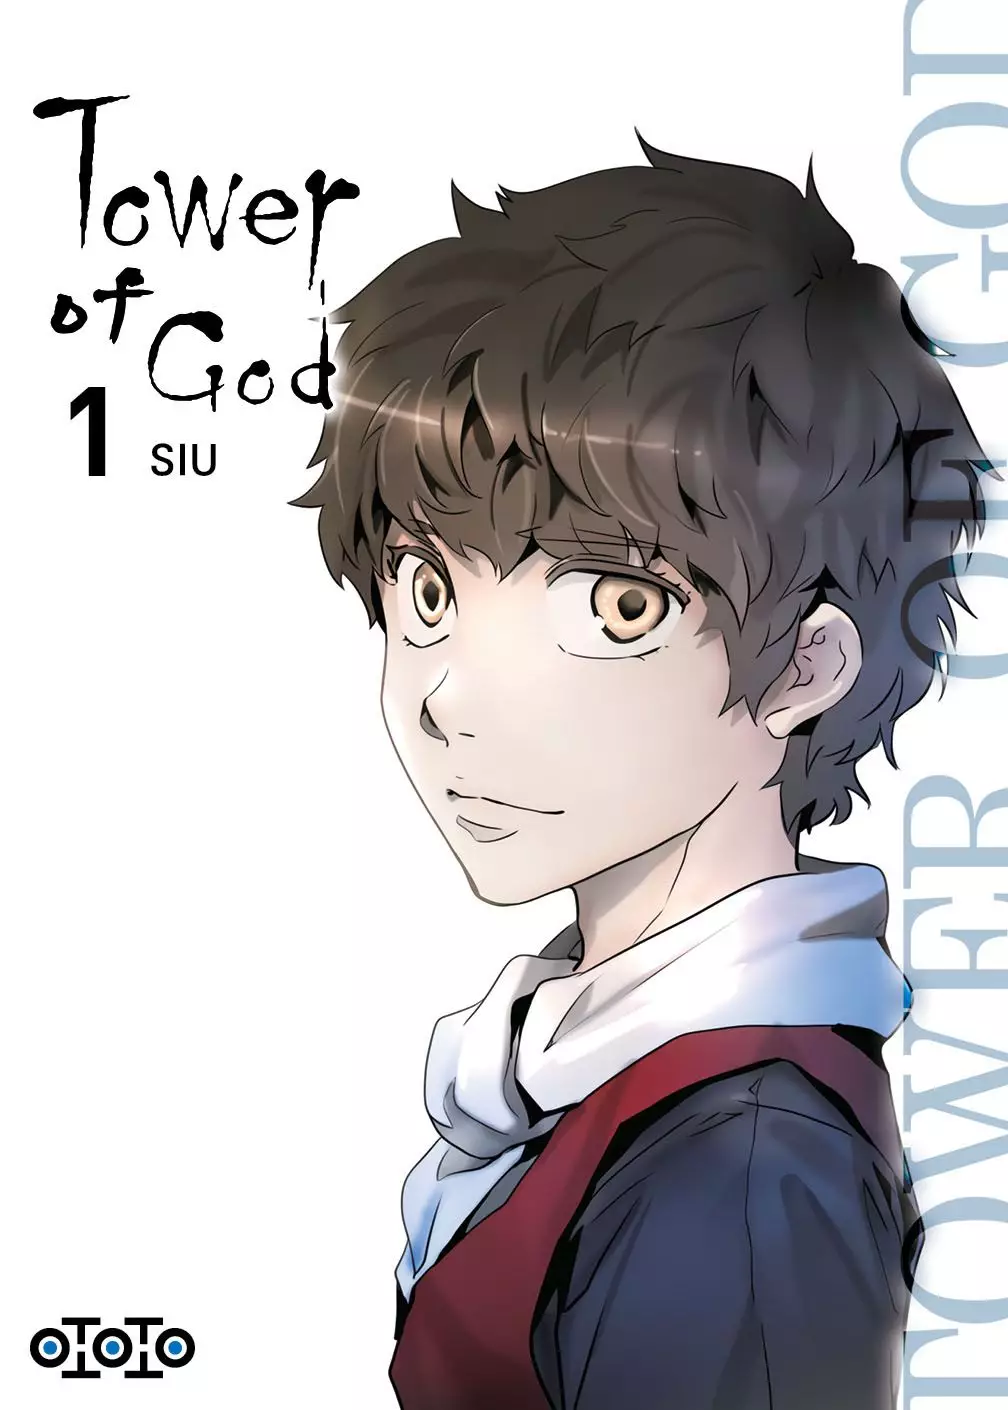 Webtoon de Tower of God encerra hiato com o lançamento do capítulo 134 da  terceira temporada - Crunchyroll Notícias